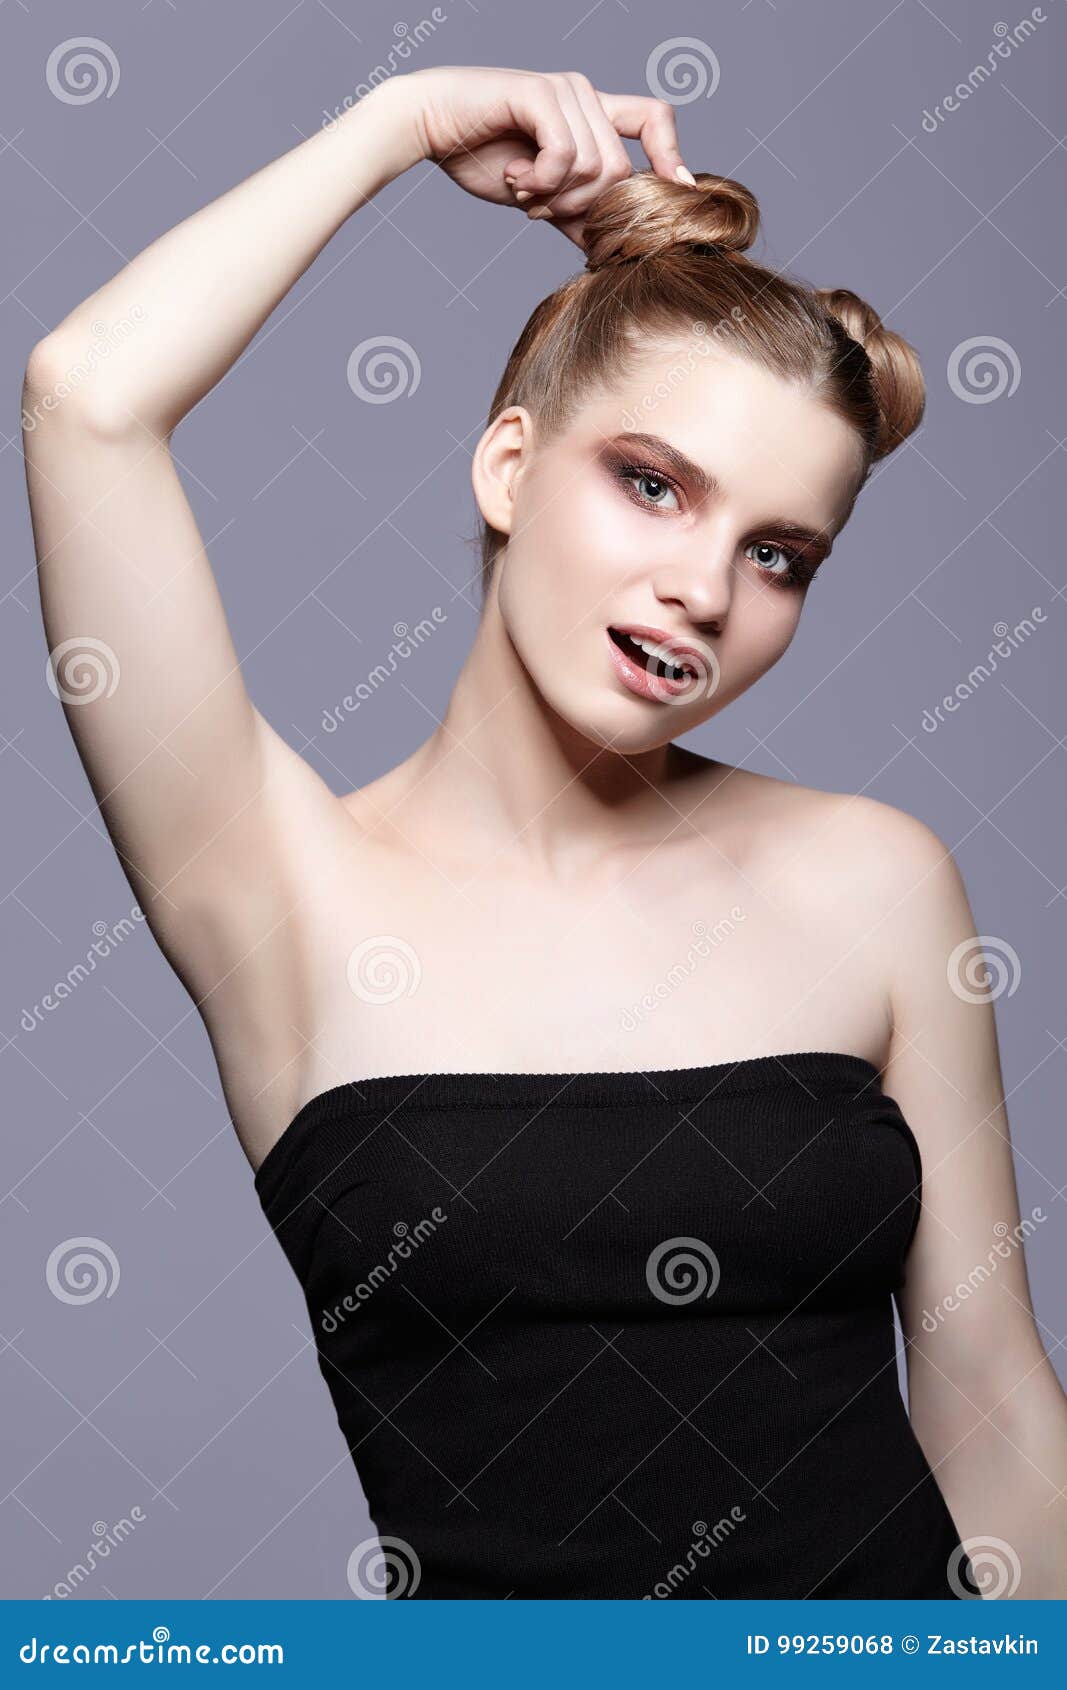 Young teen girl armpit hair